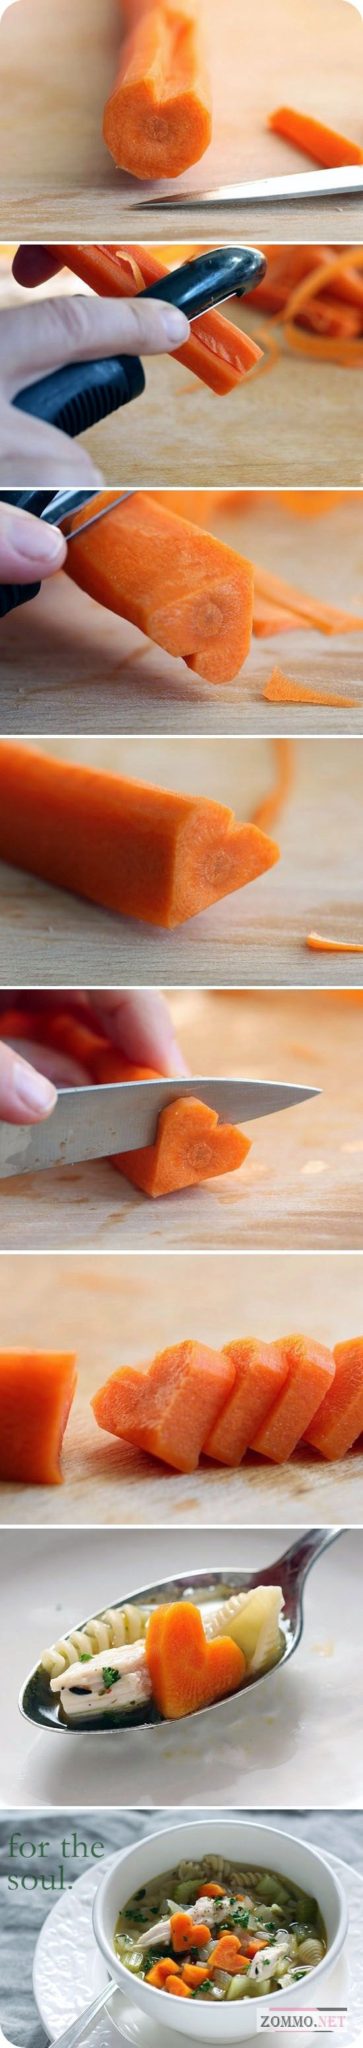 Морковка в виде сердечка